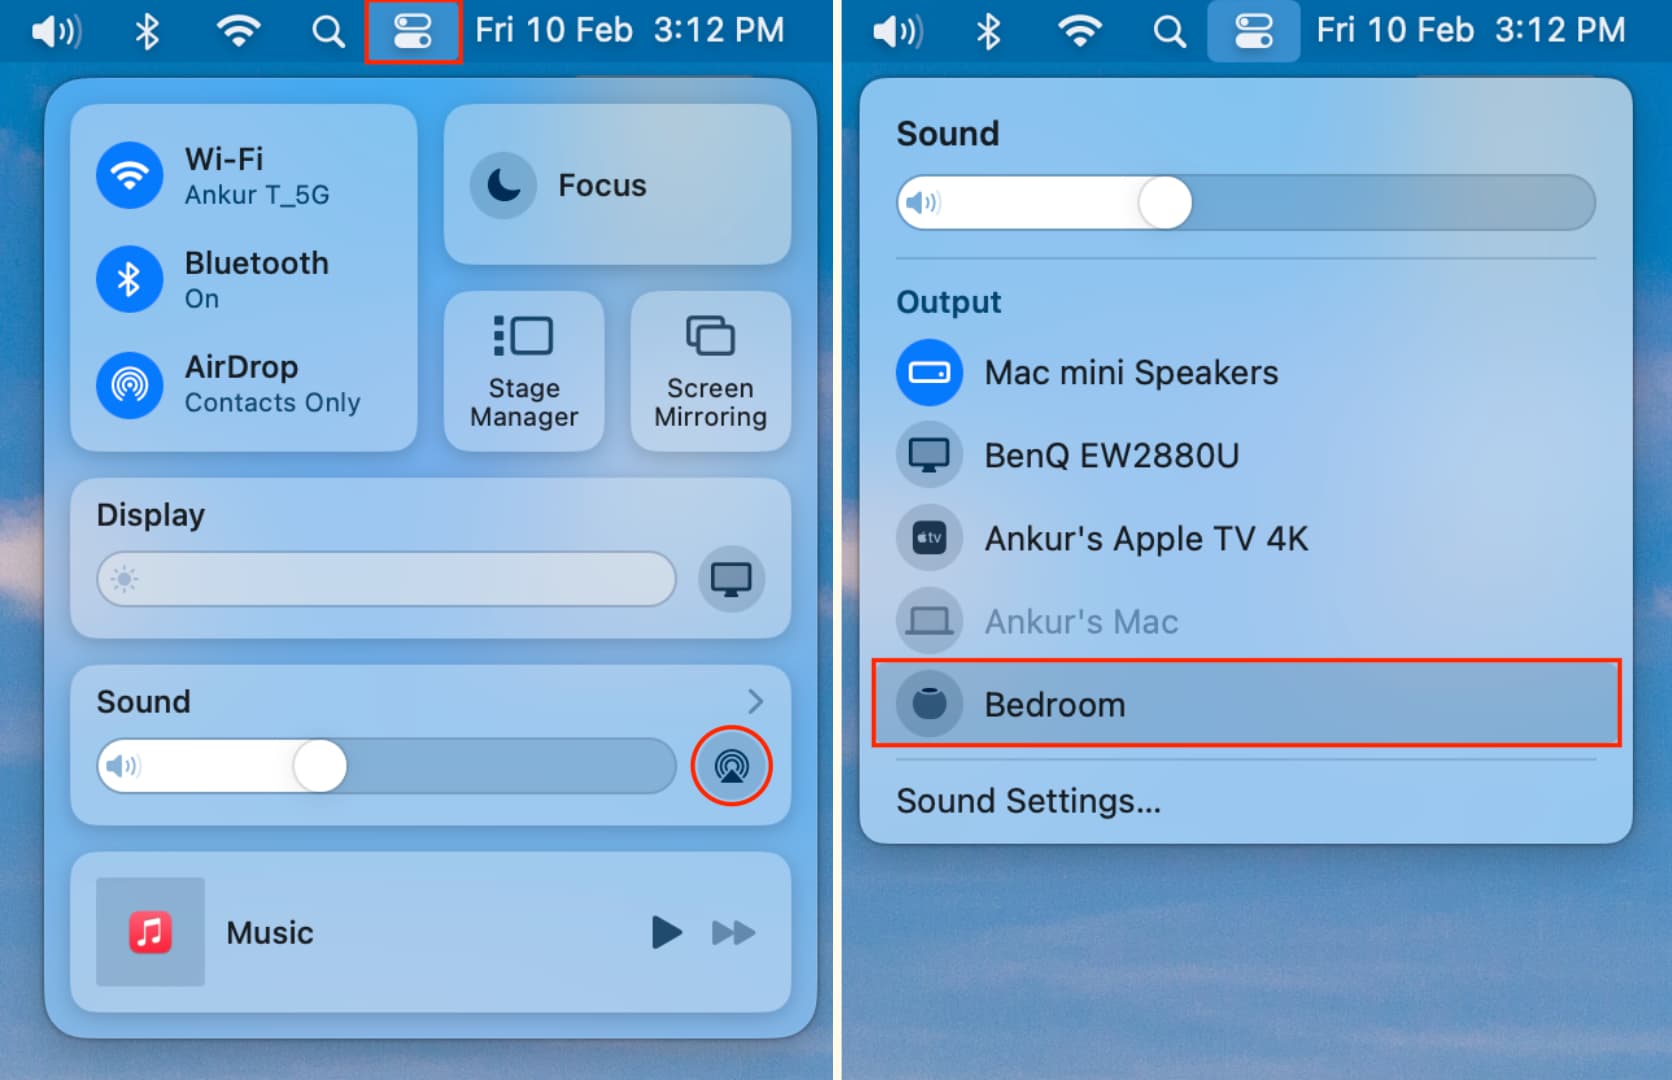 Use HomePod as speaker on Mac